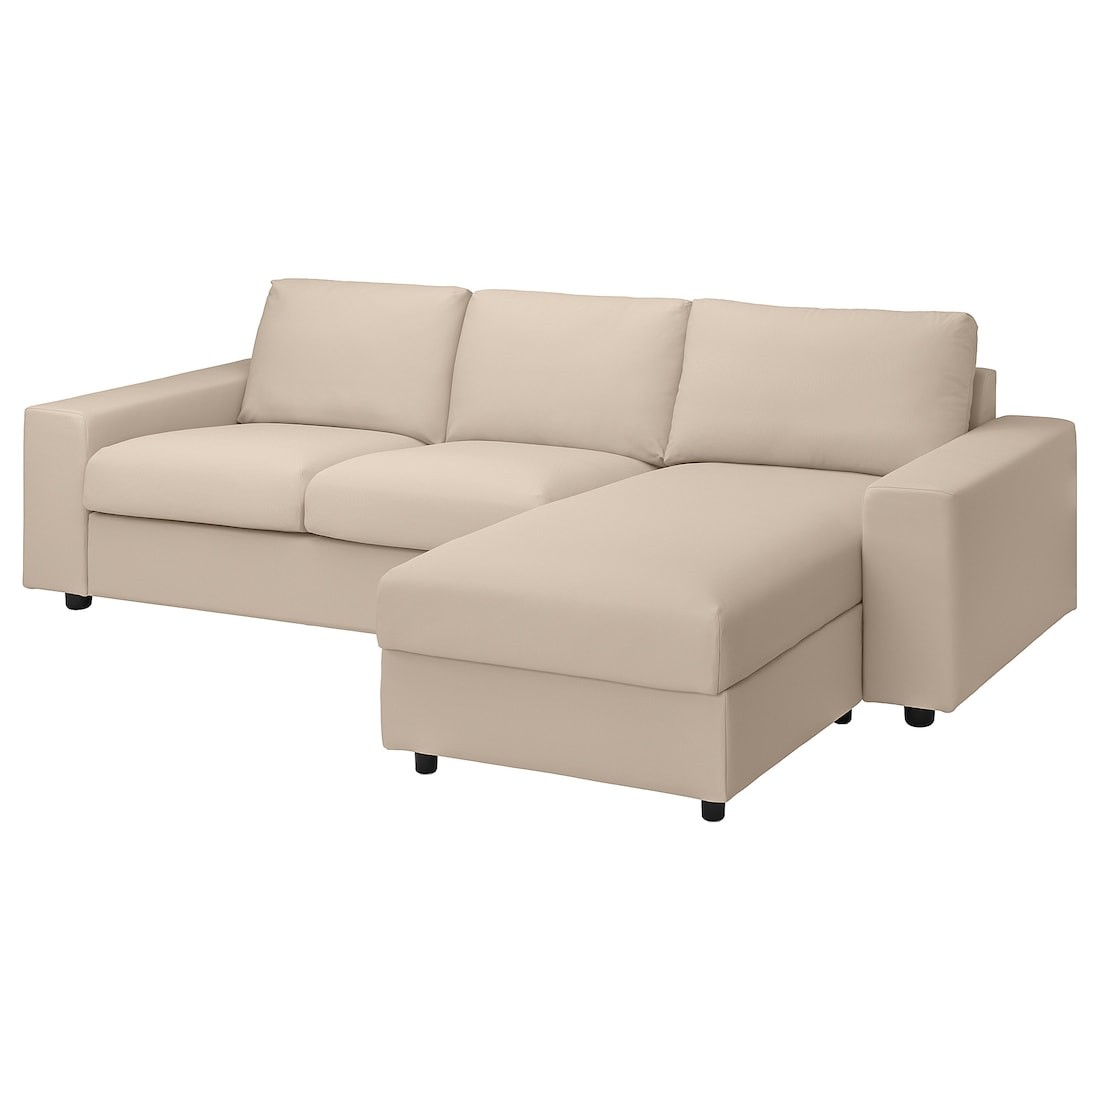 VIMLE ВИМЛЕ 3-местный диван с козеткой, с широкими подлокотниками / Hallarp бежевый